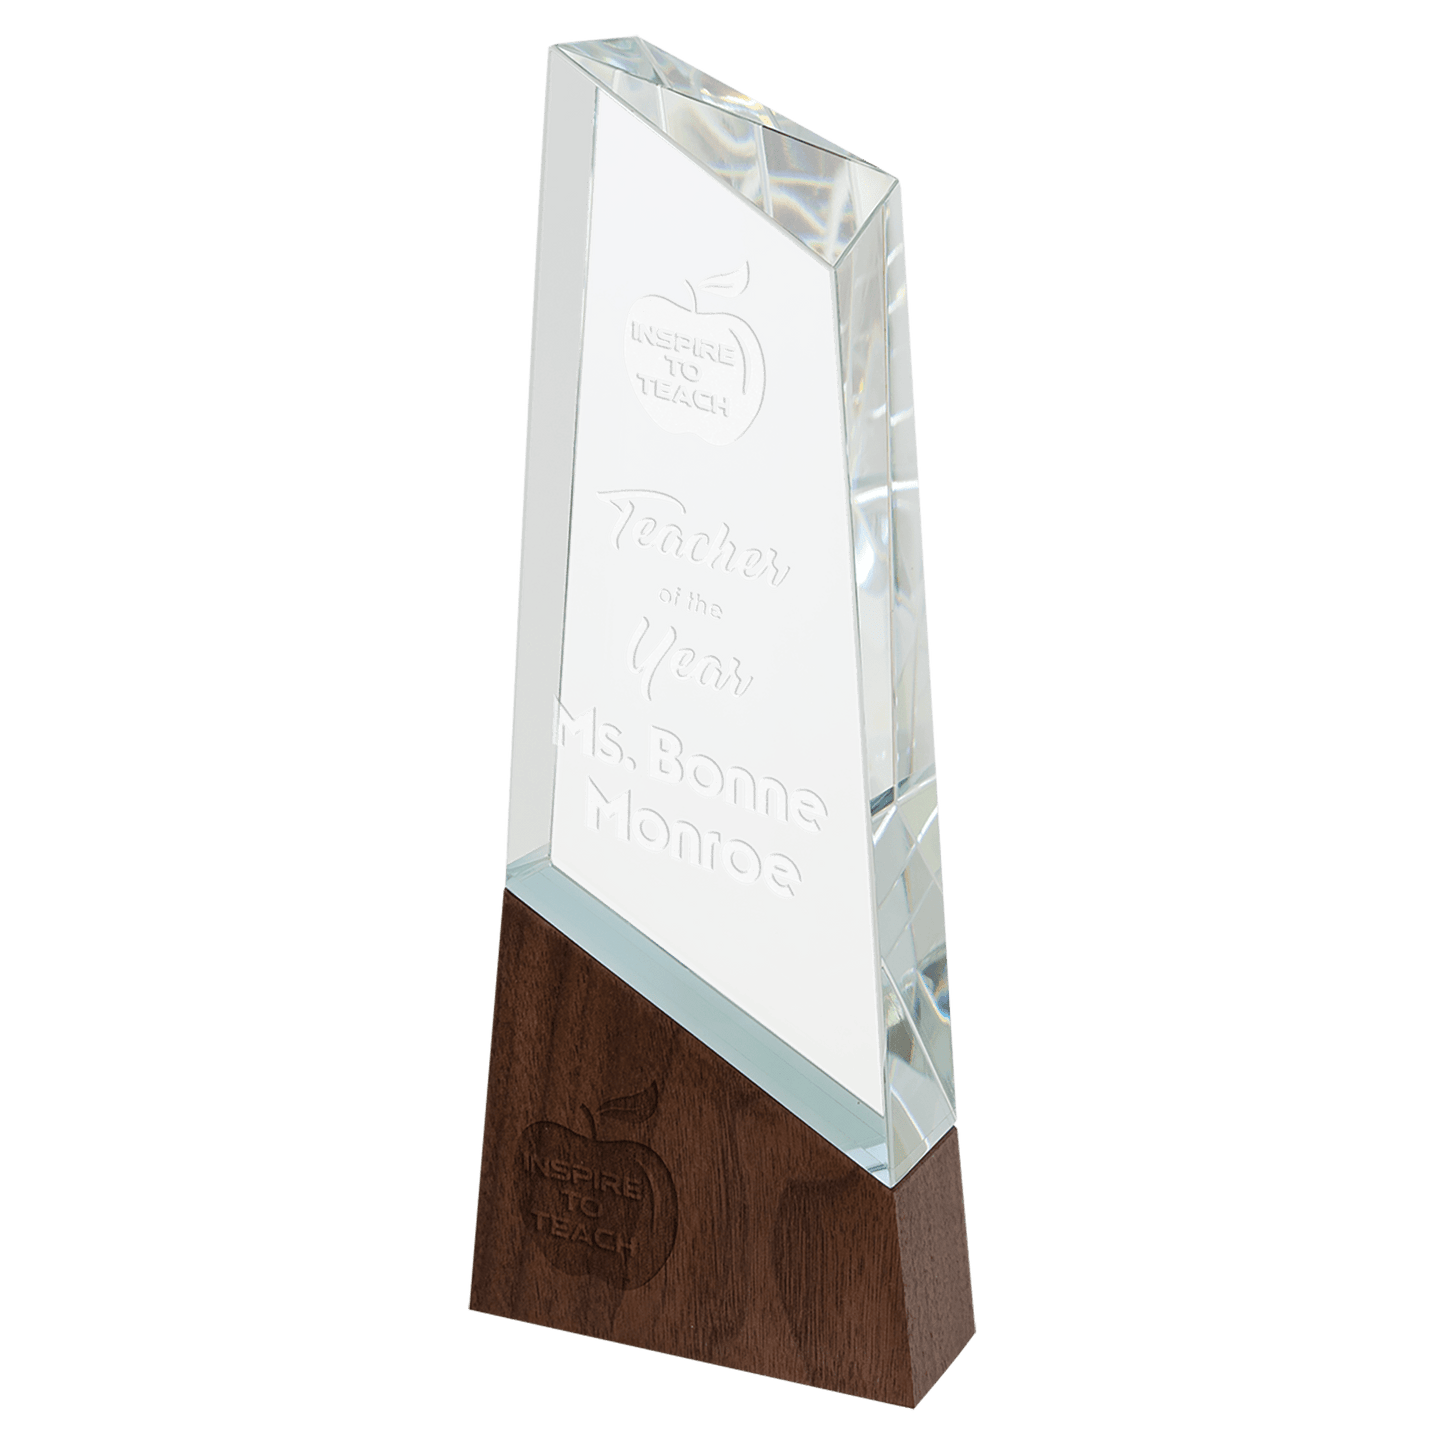 Peak Sierra Glass Award with Walnut Base